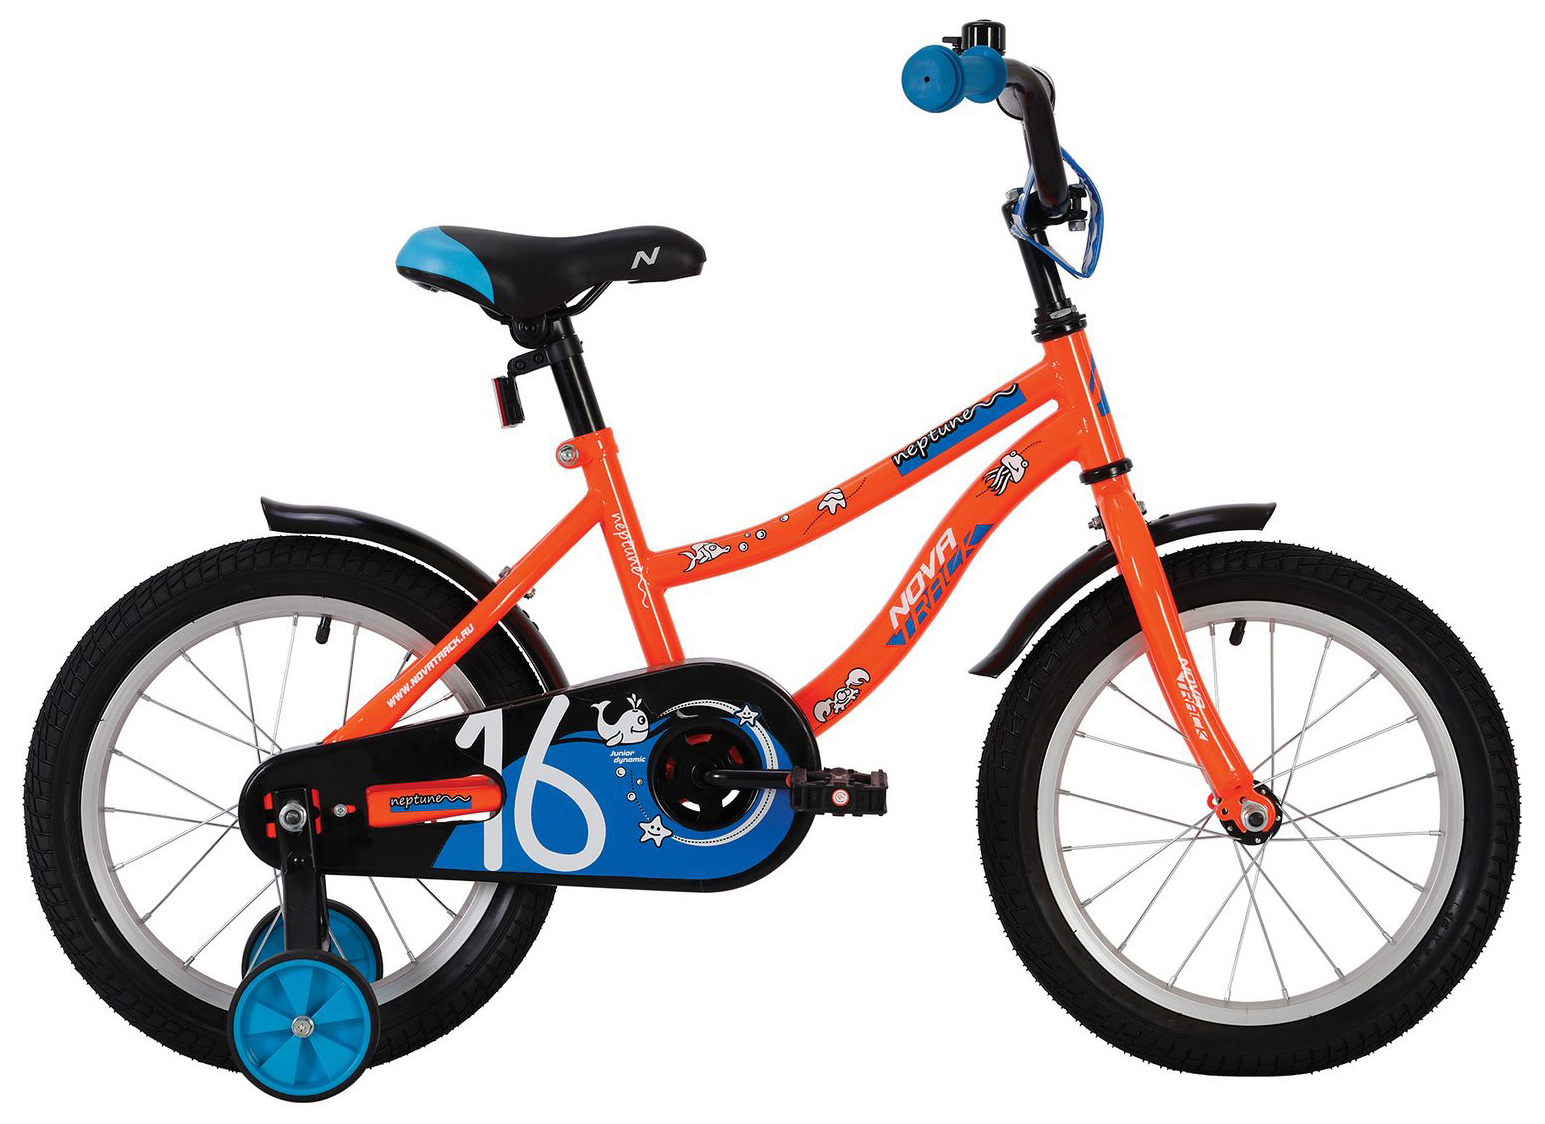  Отзывы о Детском велосипеде Novatrack Neptune 16 2020